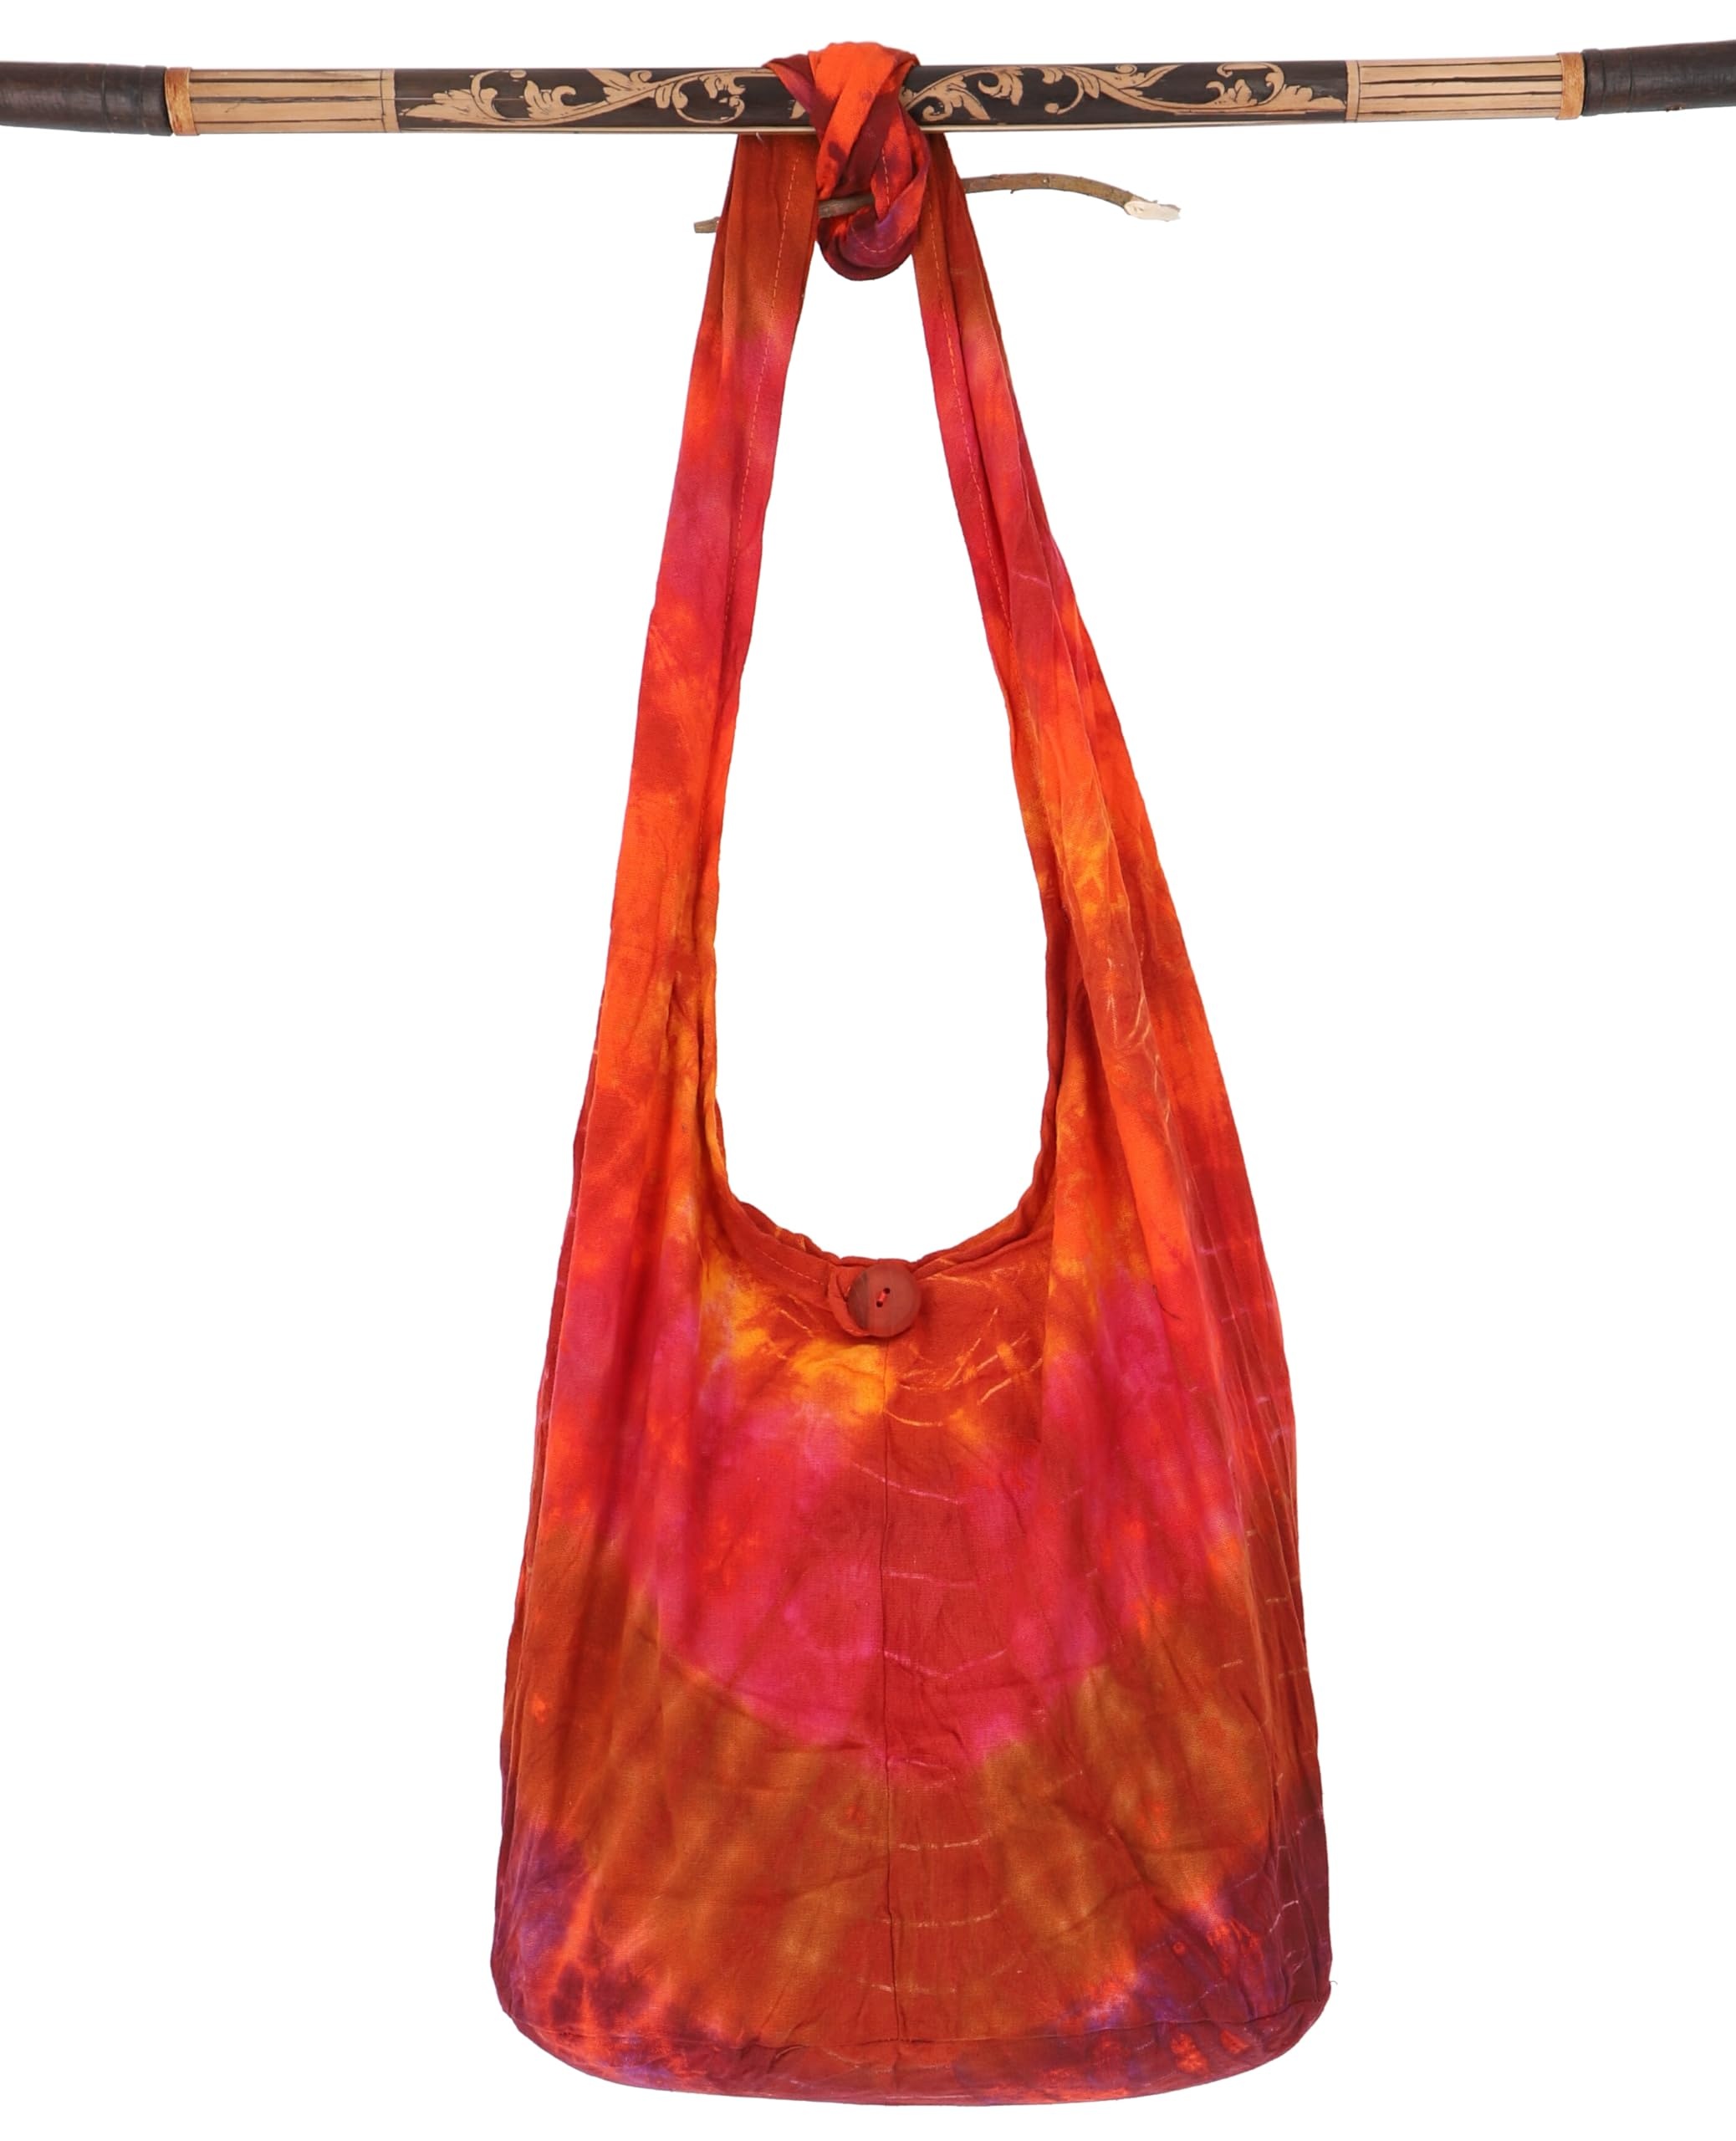 GURU SHOP Batik Sadhu Bag, Hippie Tasche, Goa Schulterbeutel - Orange/rot, Herren/Damen, Baumwolle, Size:One Size, 40x35x15 cm, Alternative Umhängetasche, Handtasche aus Stoff - Einheitsgröße